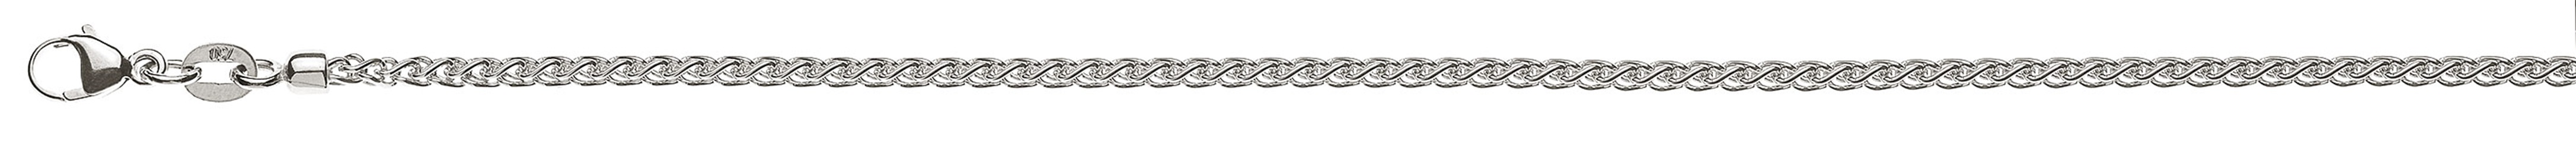 AURONOS Prestige Halskette Weissgold 18K Zopfkette 42cm 2.15mm